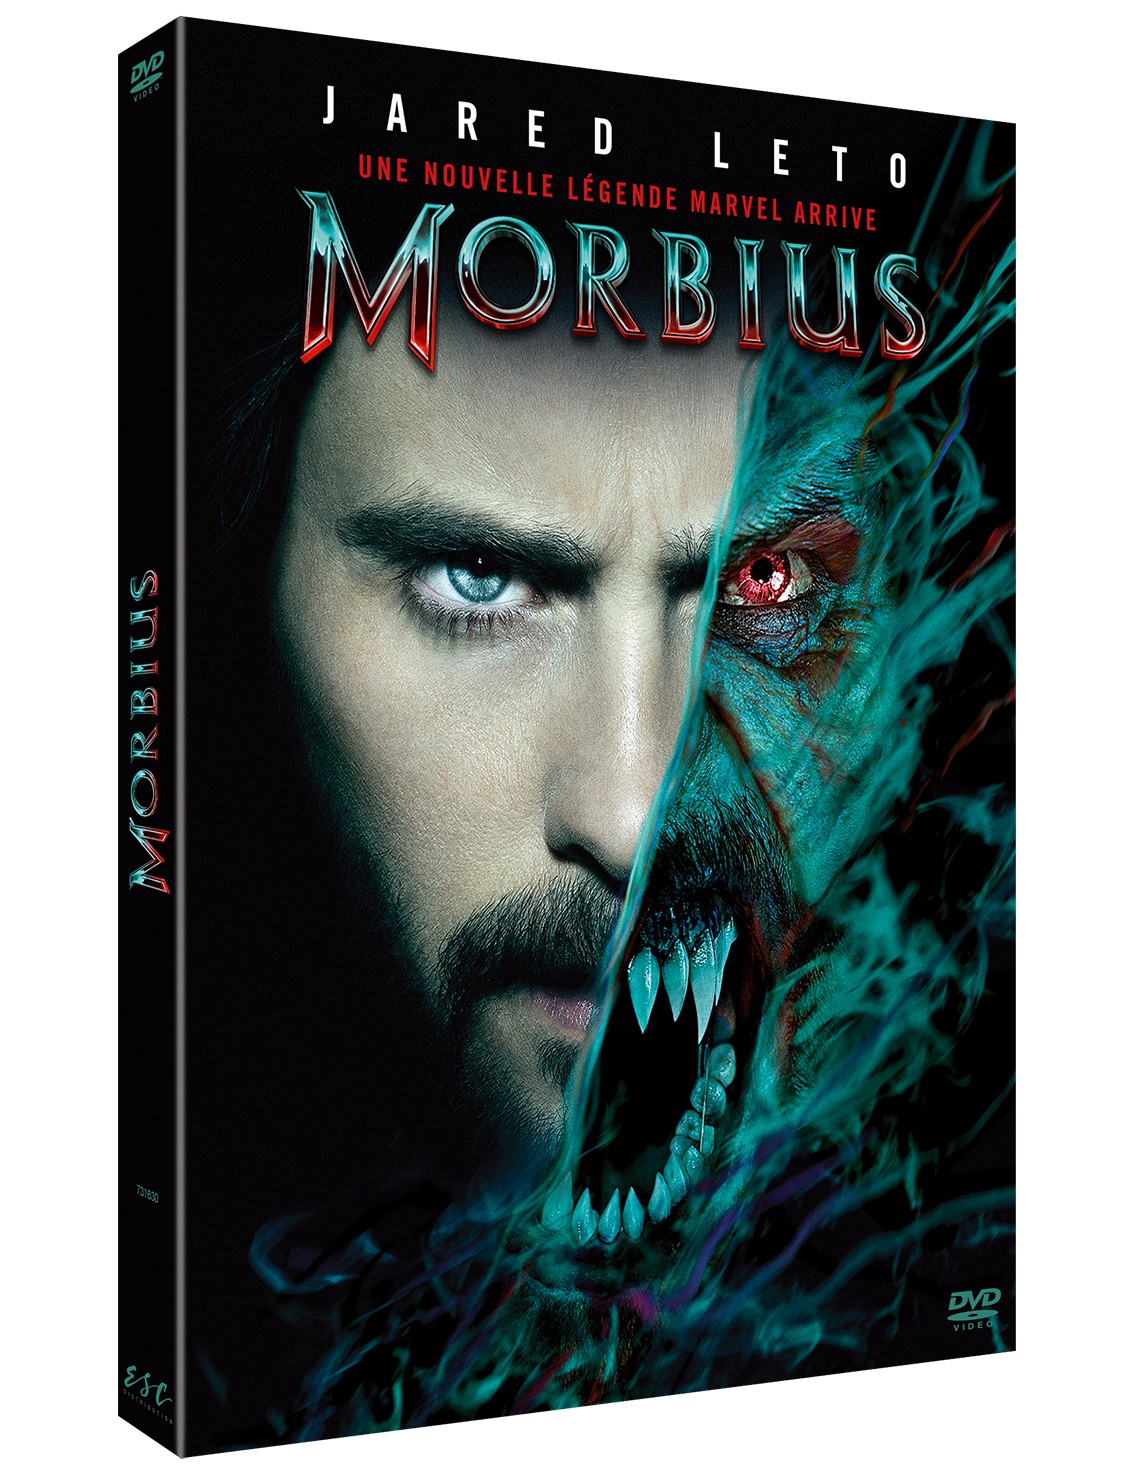 MORBIUS - DVD